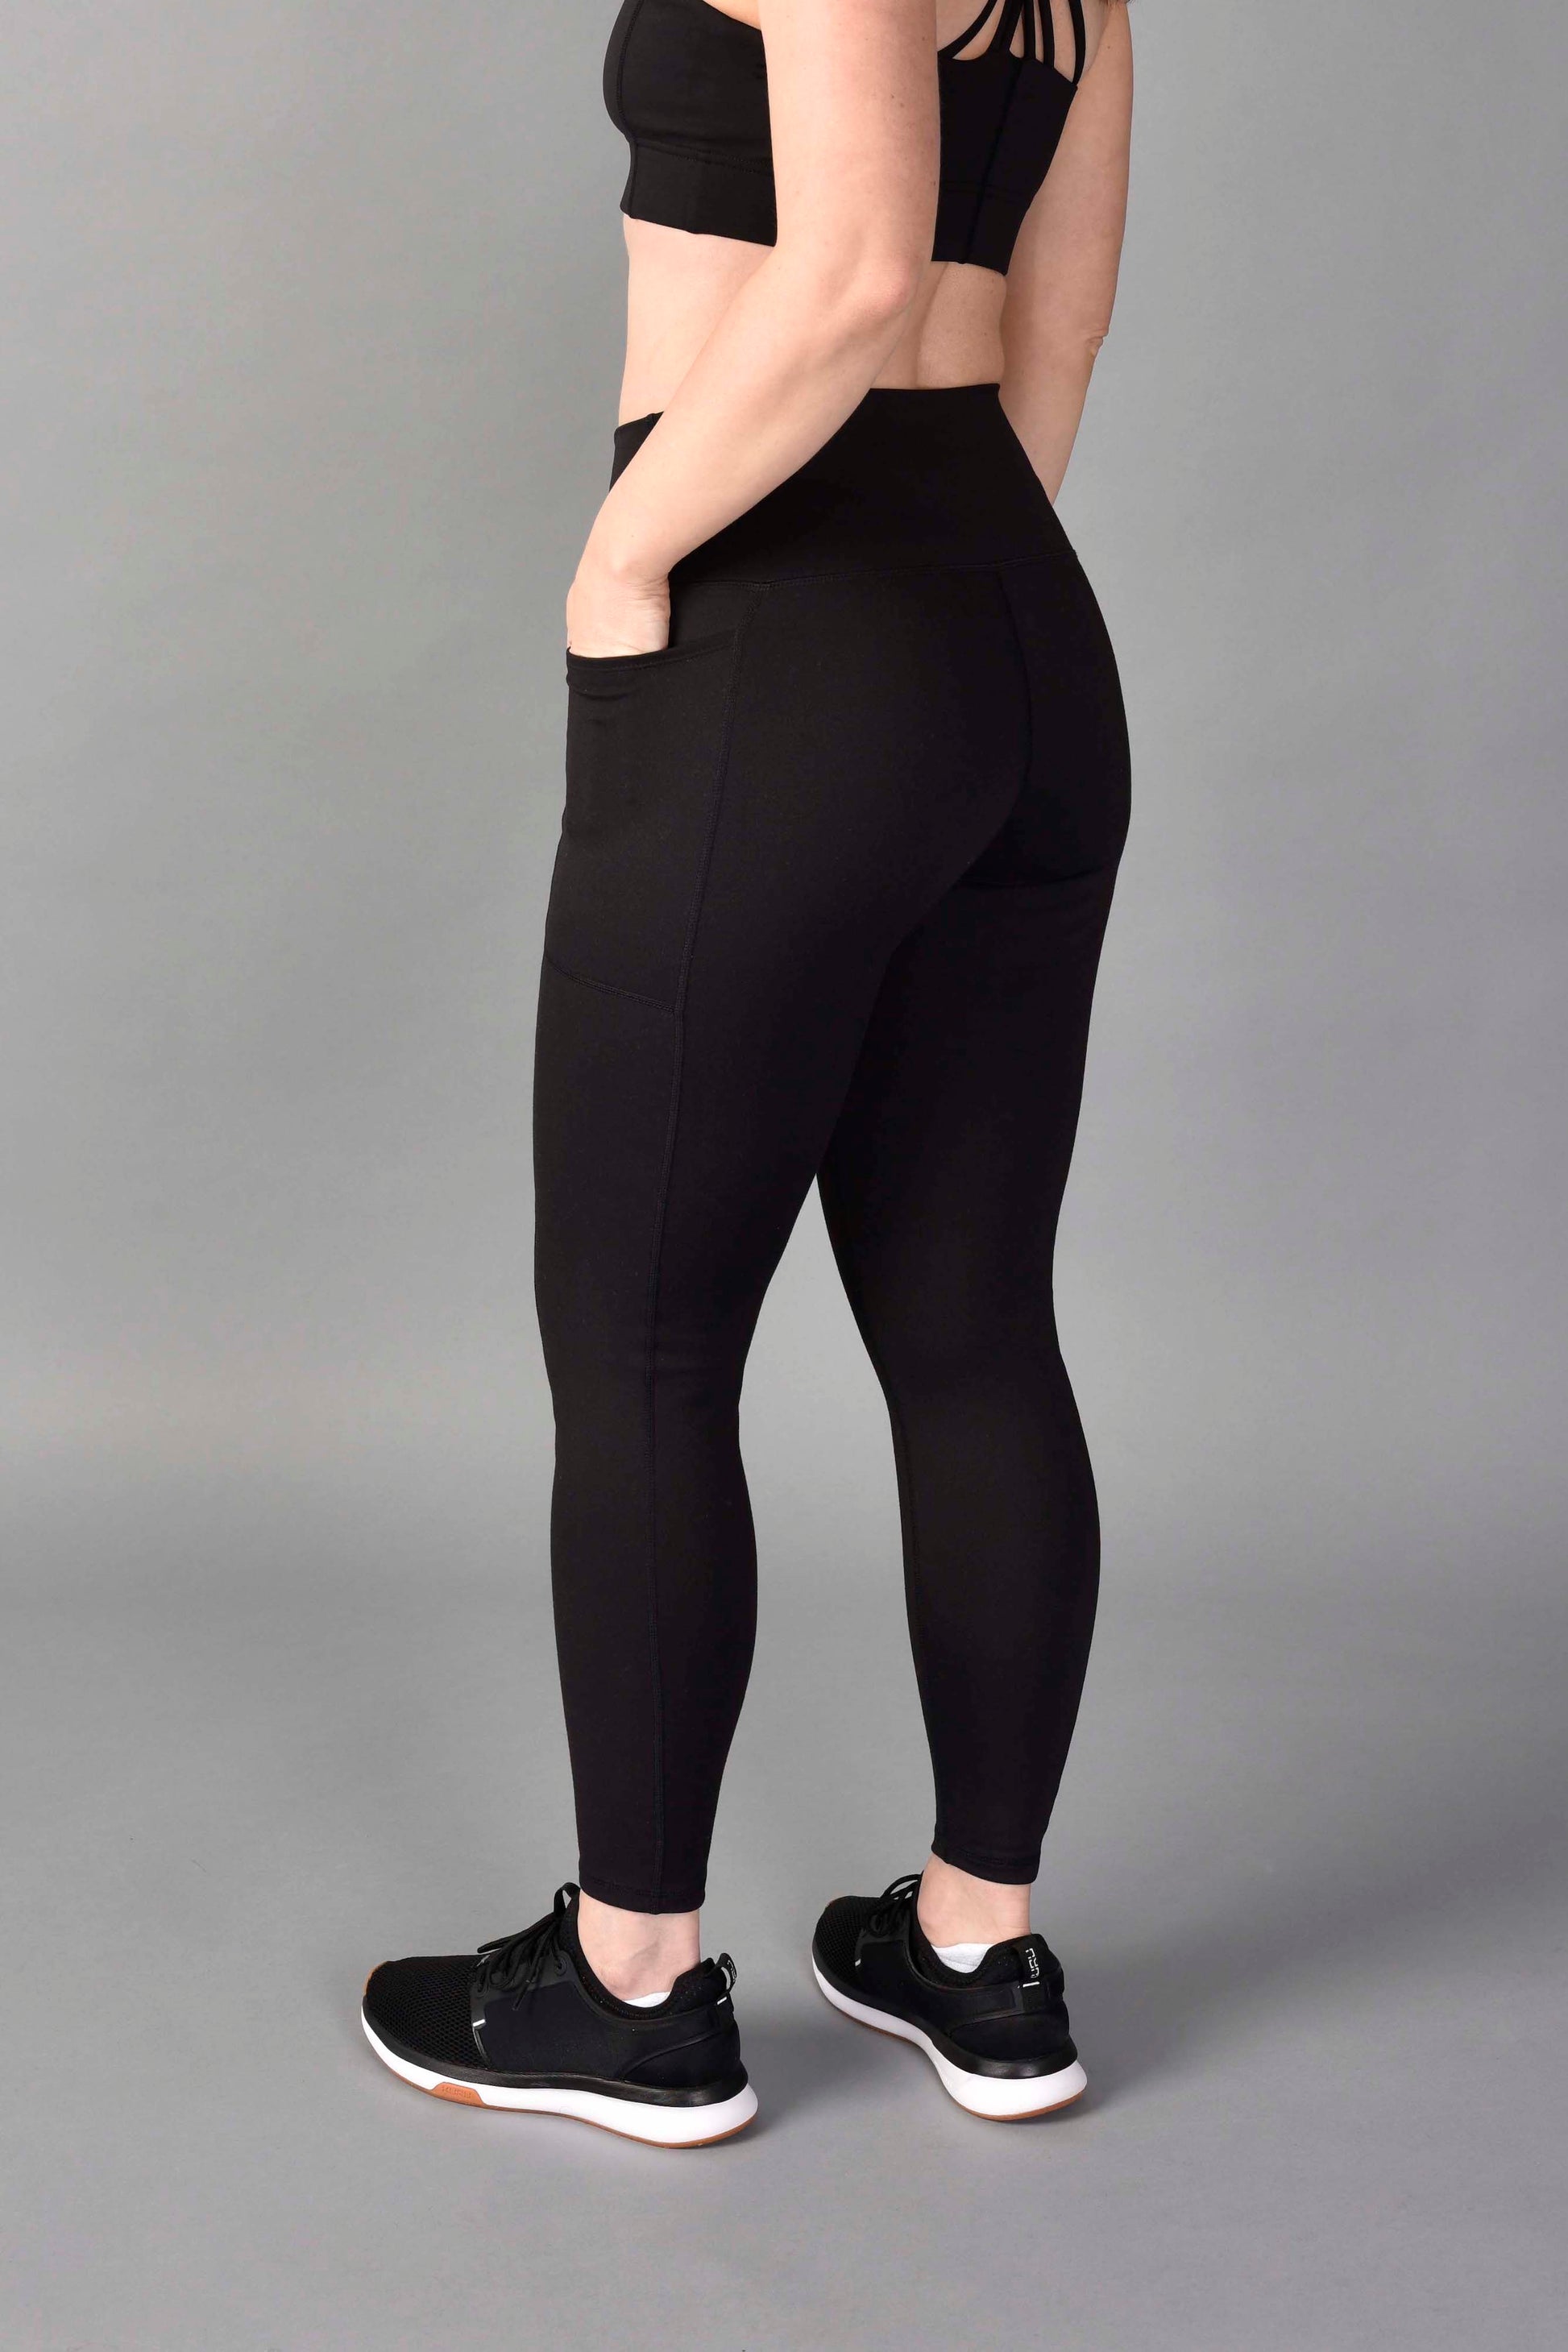 emamaco black shape mover leggings high waist pockets full length